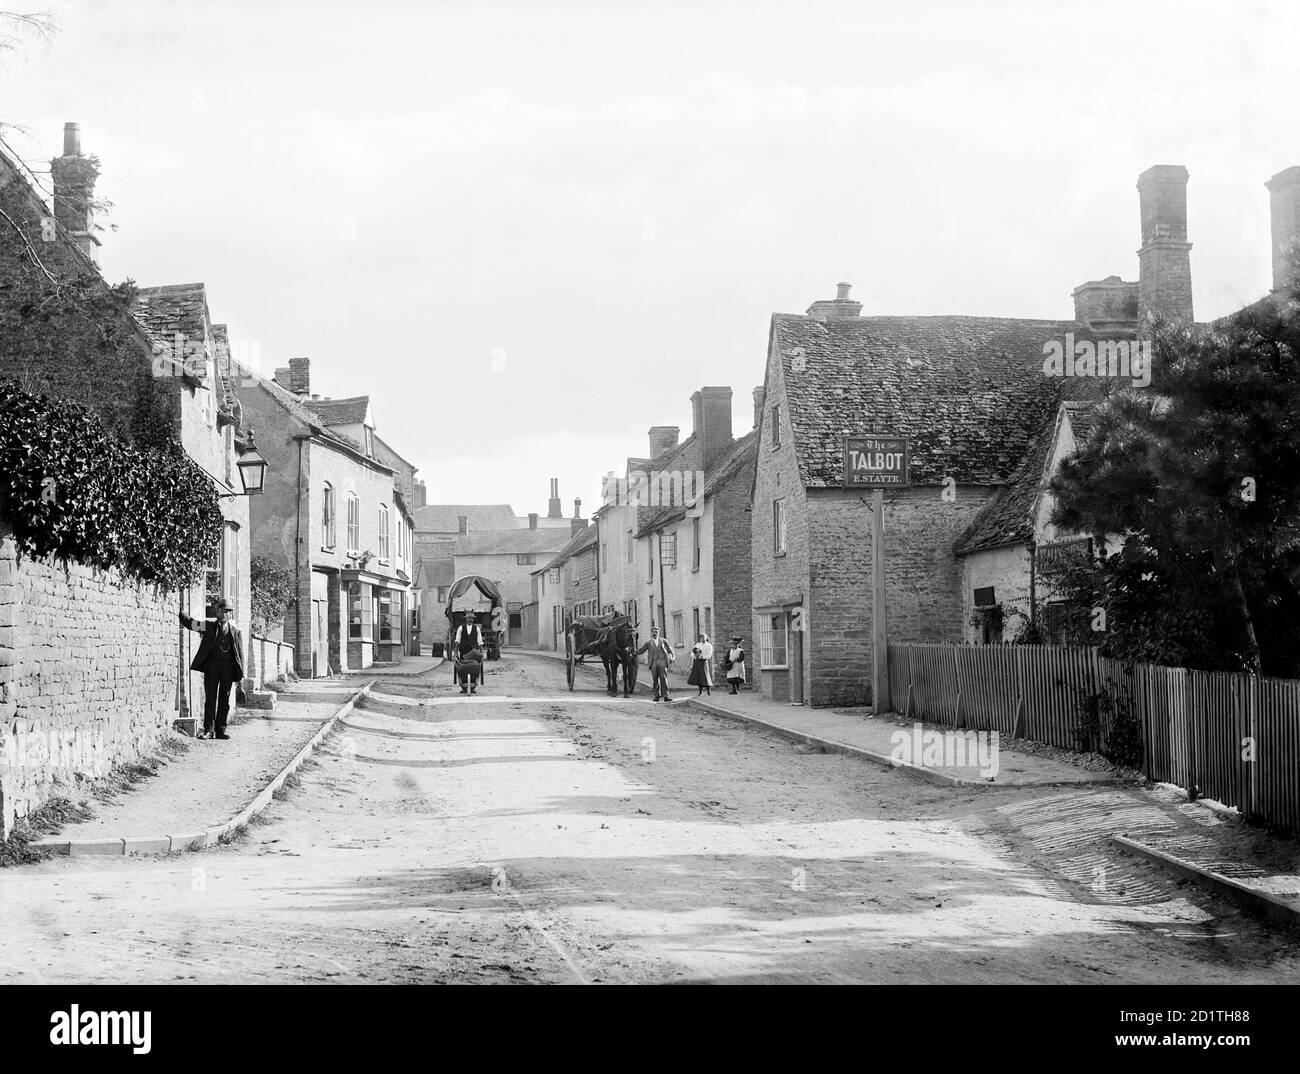 CHARLBURY, Oxfordshire. Une scène de rue montrant la rue Thames avec plusieurs habitants locaux, l'un avec une brouette, debout près de la maison publique Talbot. Photographié par Henry Taunt (actif 1860 - 1922). Banque D'Images